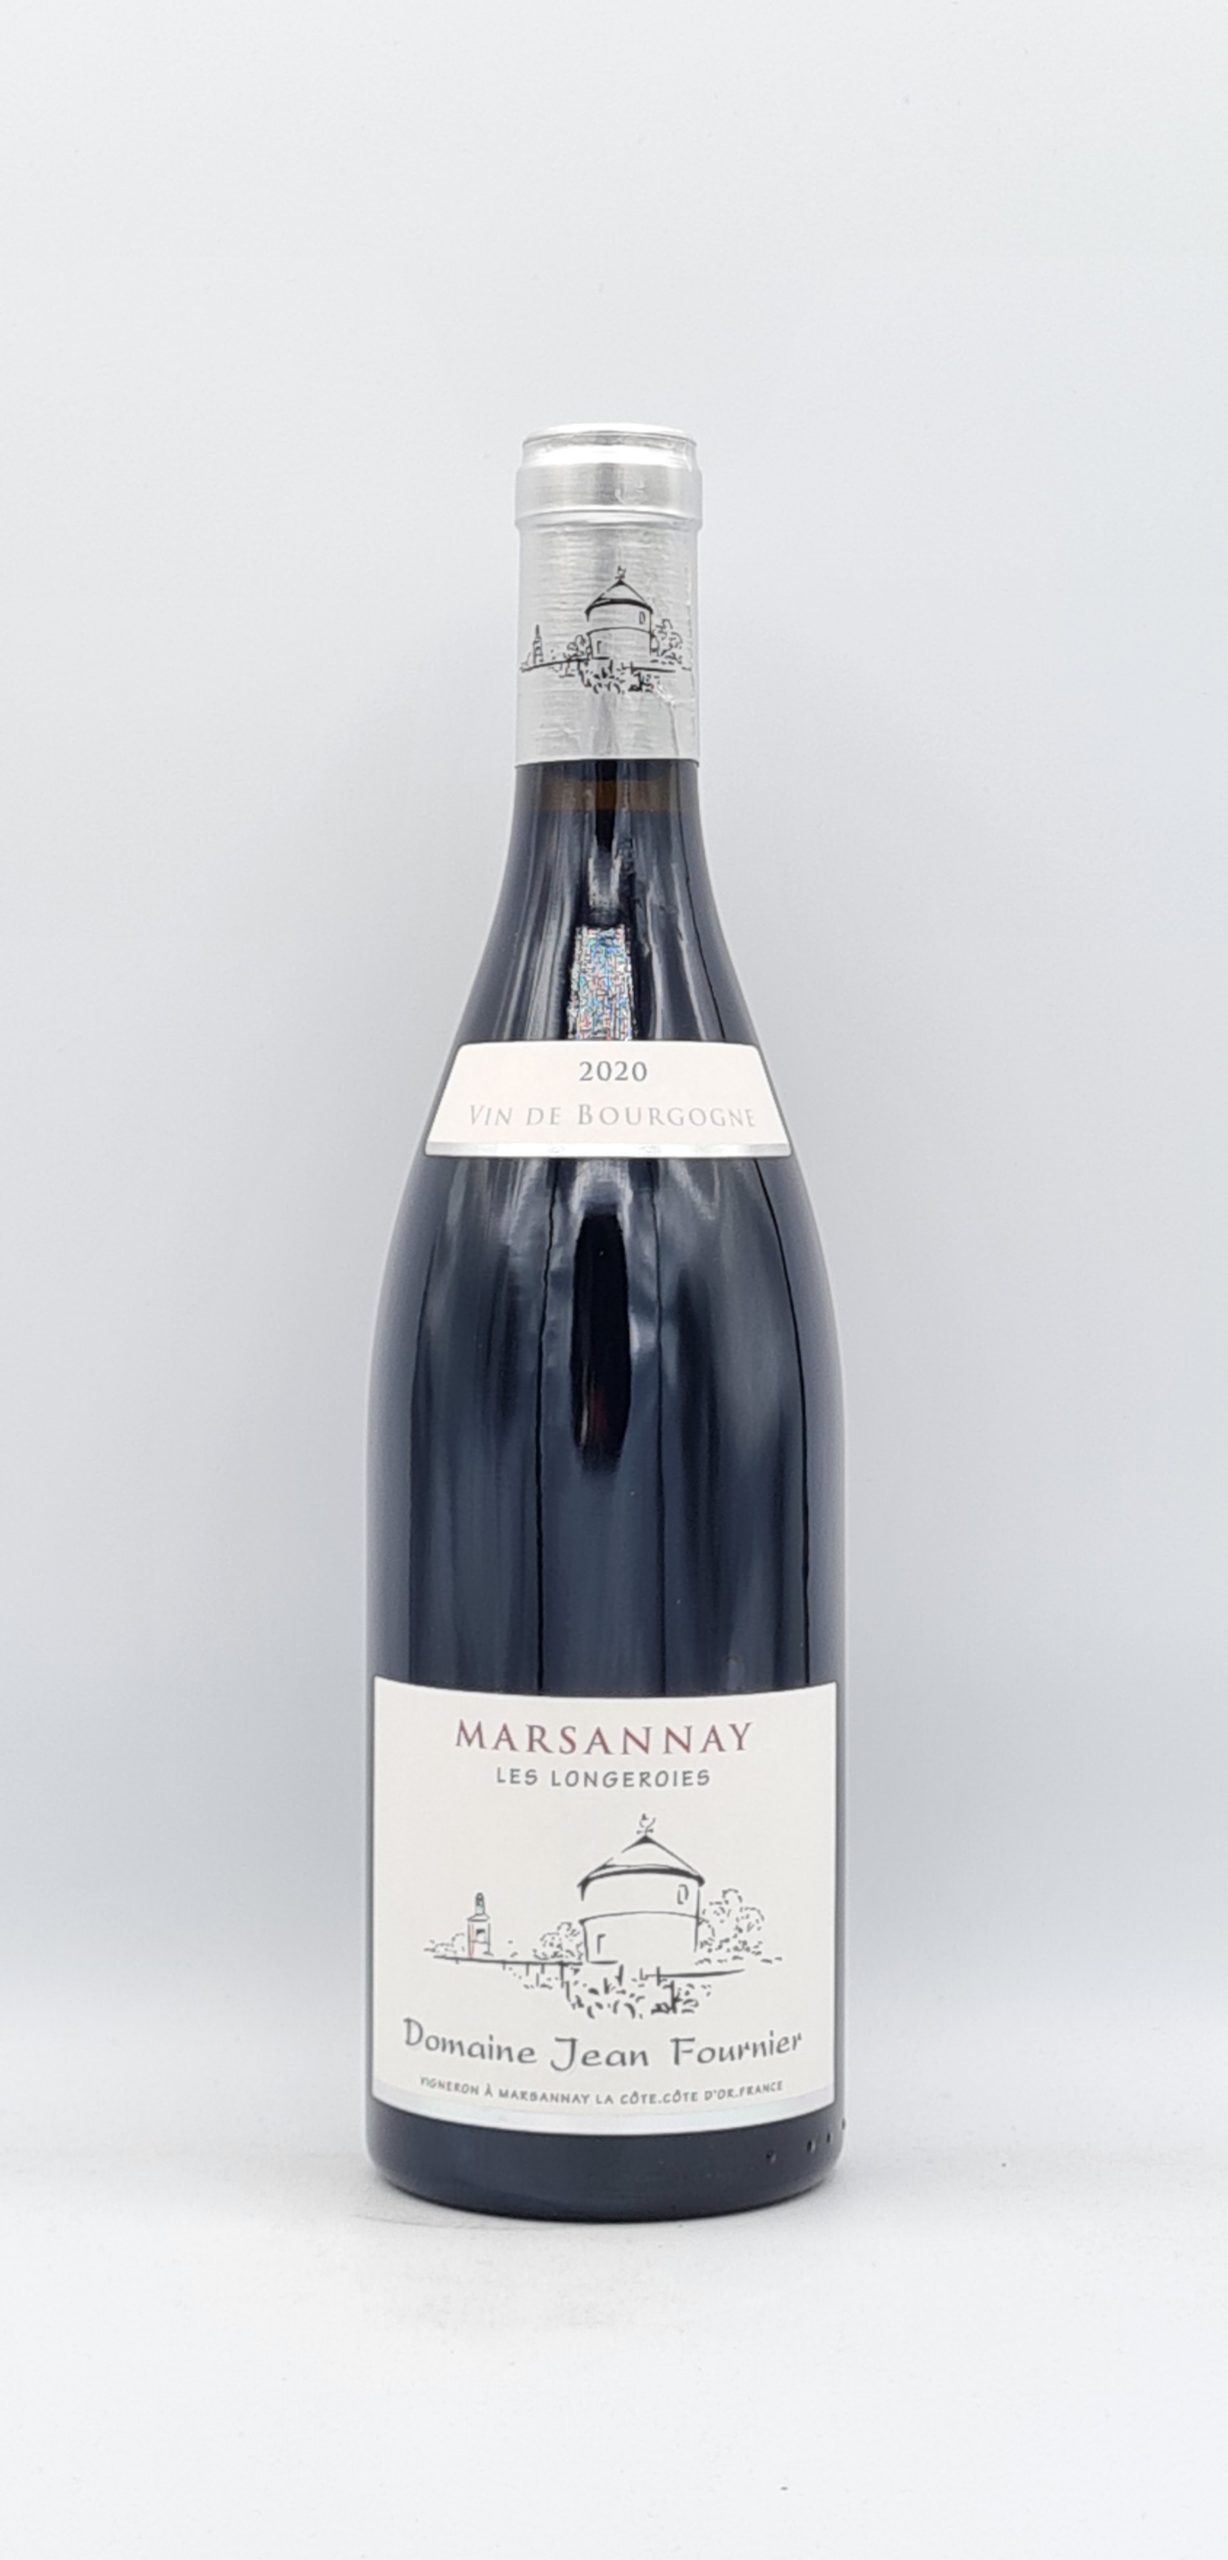 Bourgogne Marsannay “Les Longeroies” 2020 Domaine Fournier